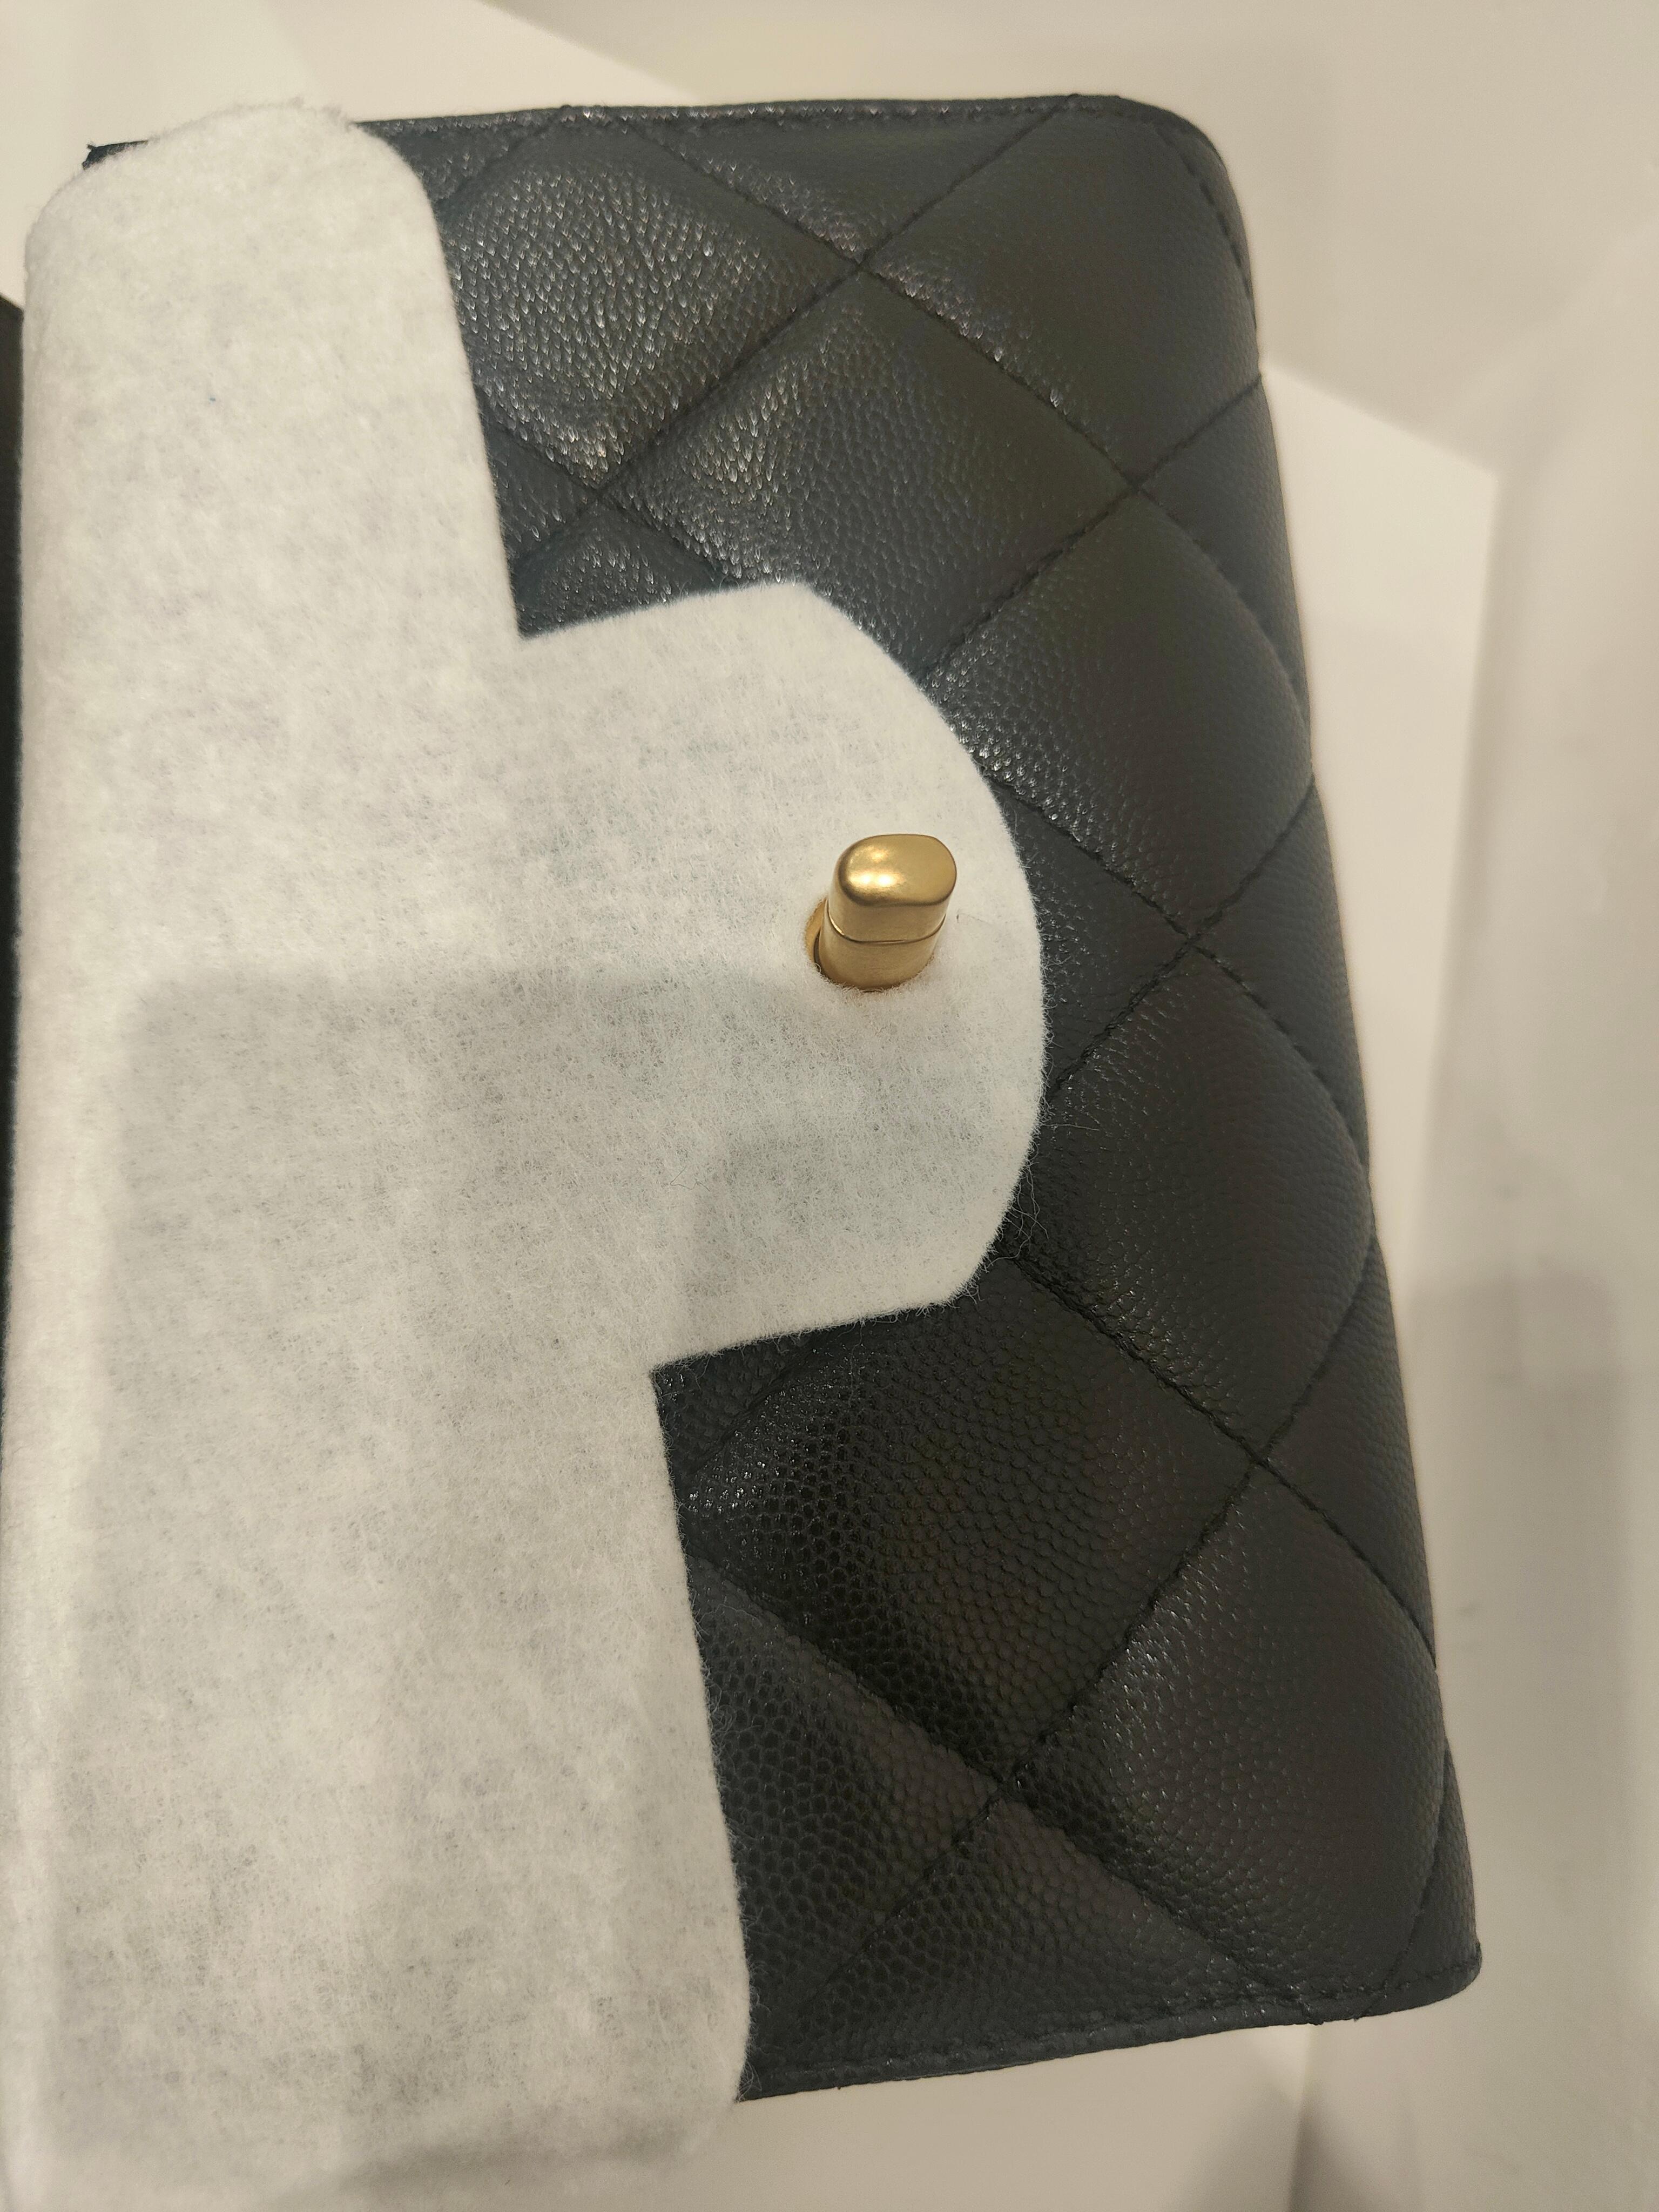 Chanel black caviar leather Gold hardware shoulder bag NWOT 2